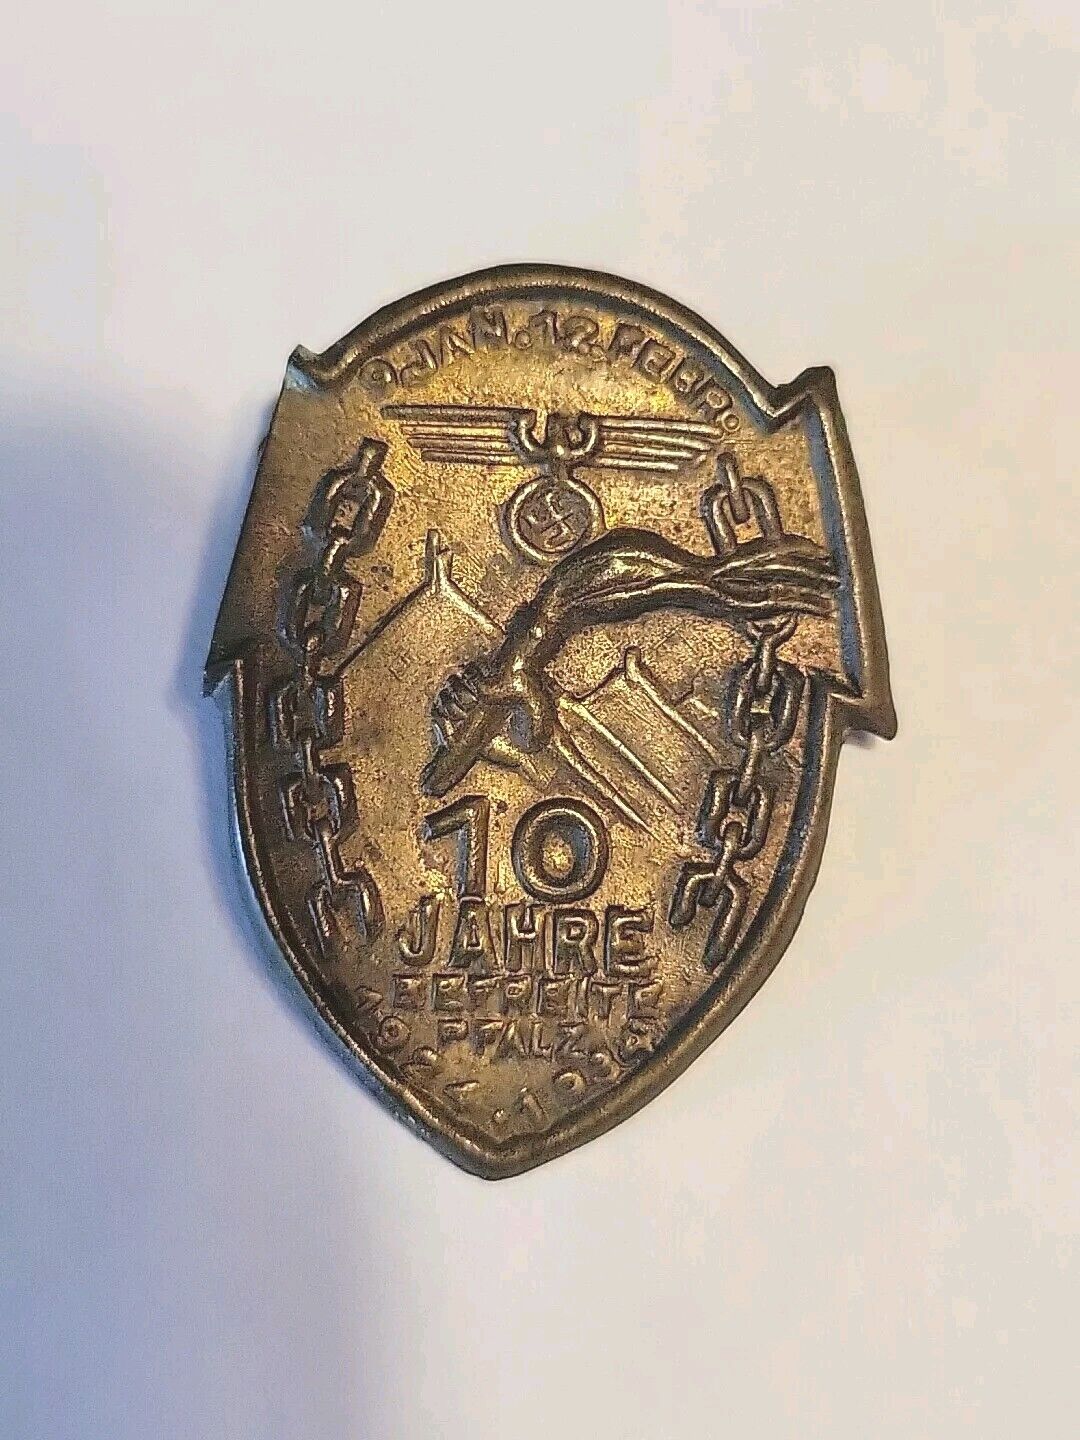 Vintage 1924-1934  10 Jahre Beereite Pfalz Tinnie German Badge Pin Brooch Brass